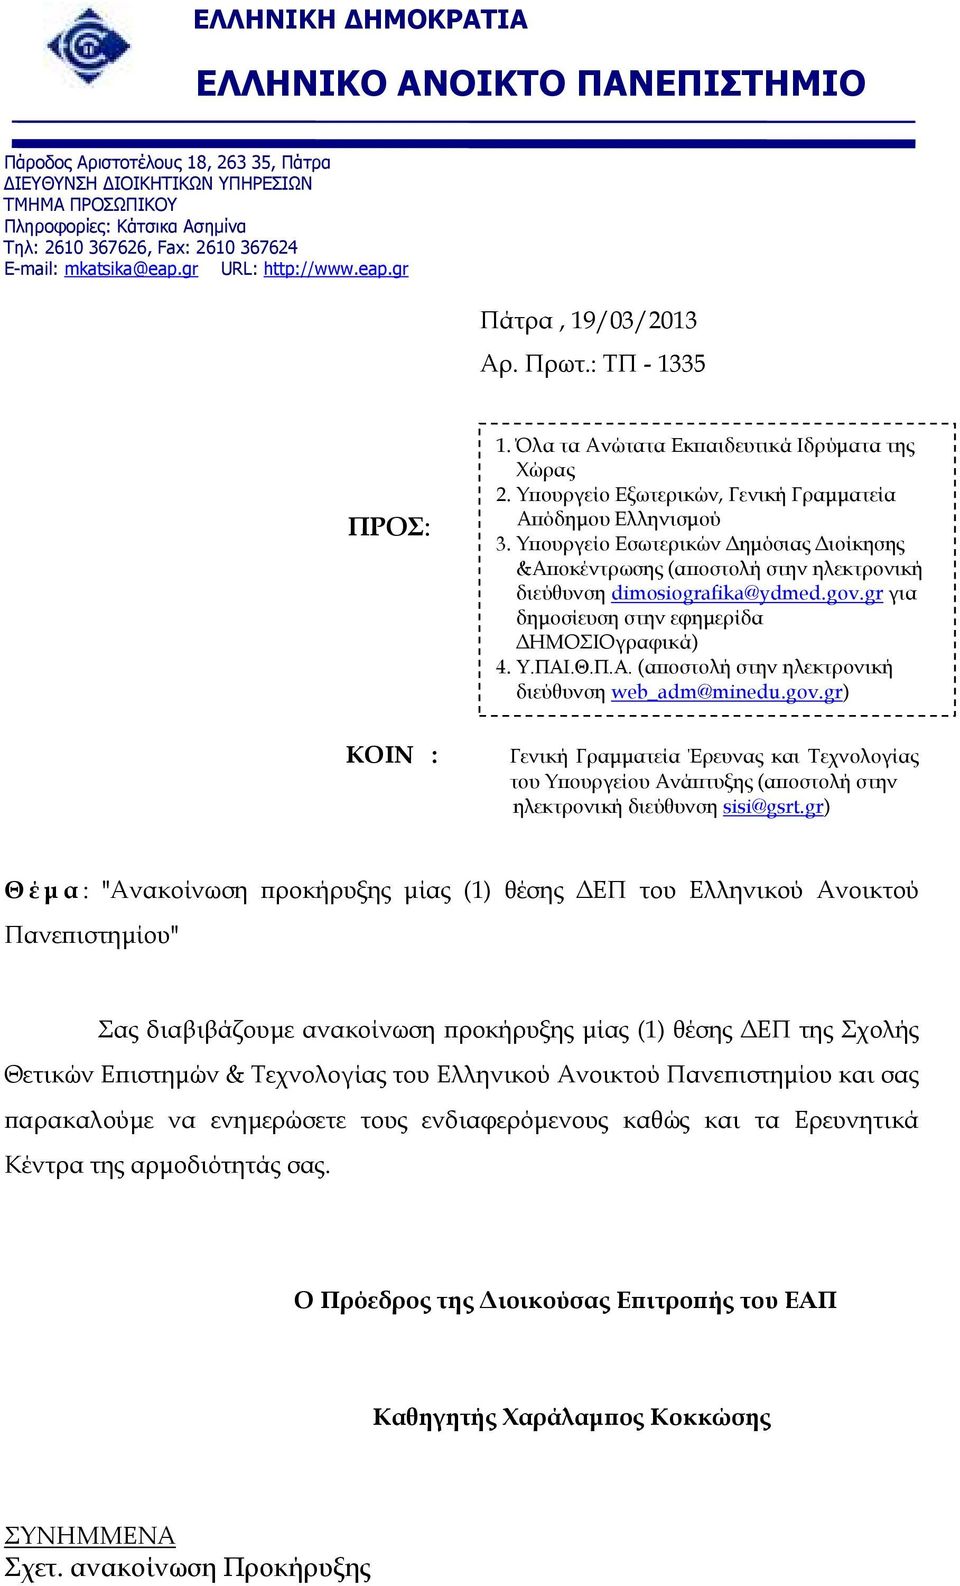 Υ ουργείο Εσωτερικών ηµόσιας ιοίκησης &Α οκέντρωσης (α οστολή στην ηλεκτρονική διεύθυνση dimosiografika@ydmed.gov.gr για δηµοσίευση στην εφηµερίδα ΗΜΟΣΙΟγραφικά) 4. Υ.ΠΑΙ.Θ.Π.Α. (α οστολή στην ηλεκτρονική διεύθυνση web_adm@minedu.